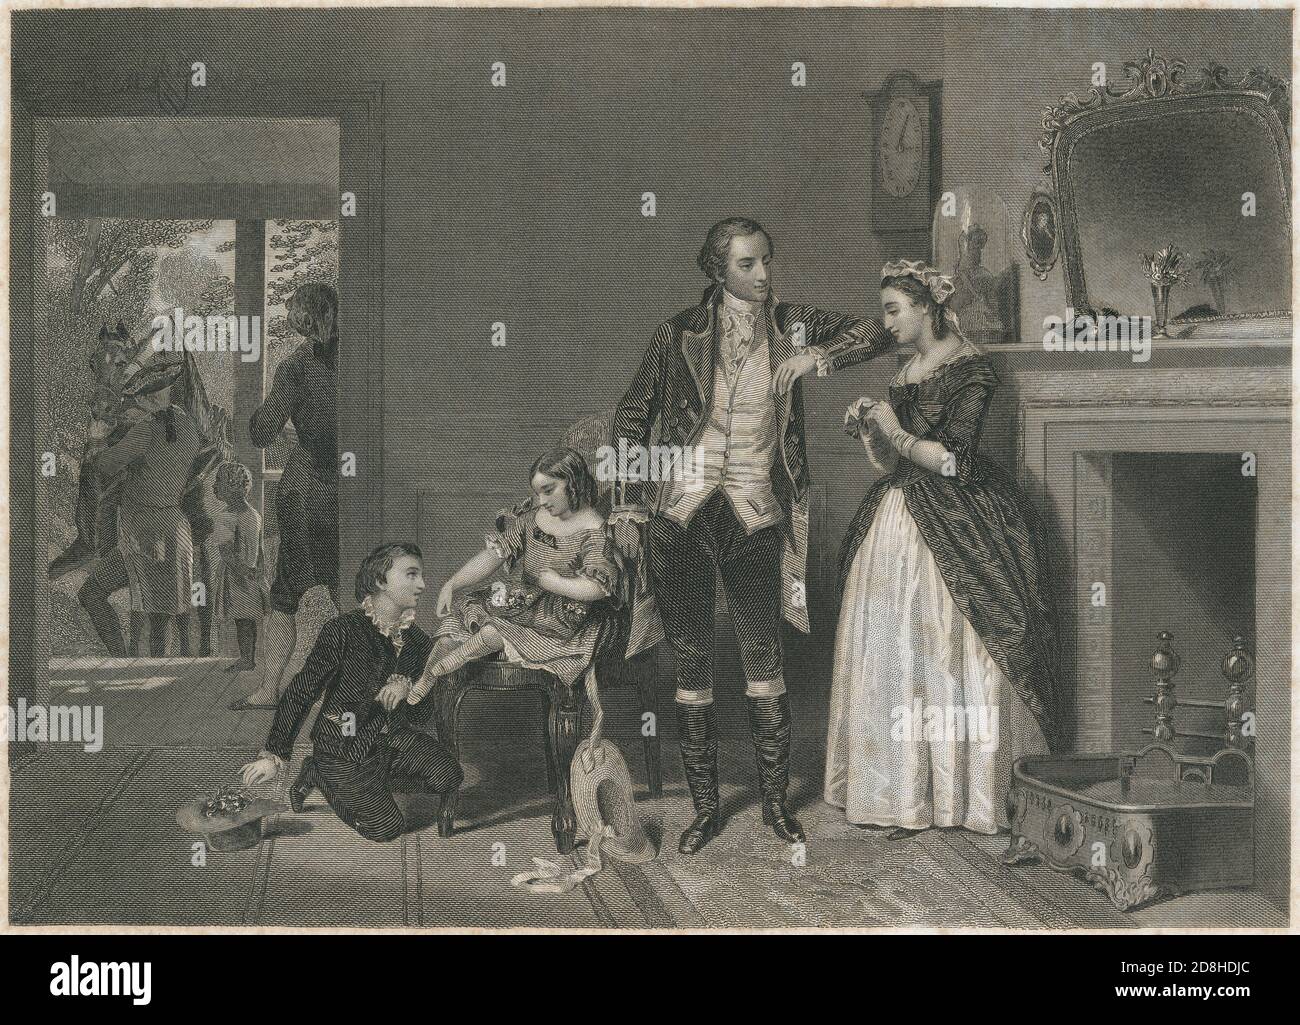 Antica incisione del 1856, la prima intervista di Washington con la signora Custis dopo la signora Washington, dopo la pittura di Alonso Chappel. FONTE: INCISIONE ORIGINALE Foto Stock